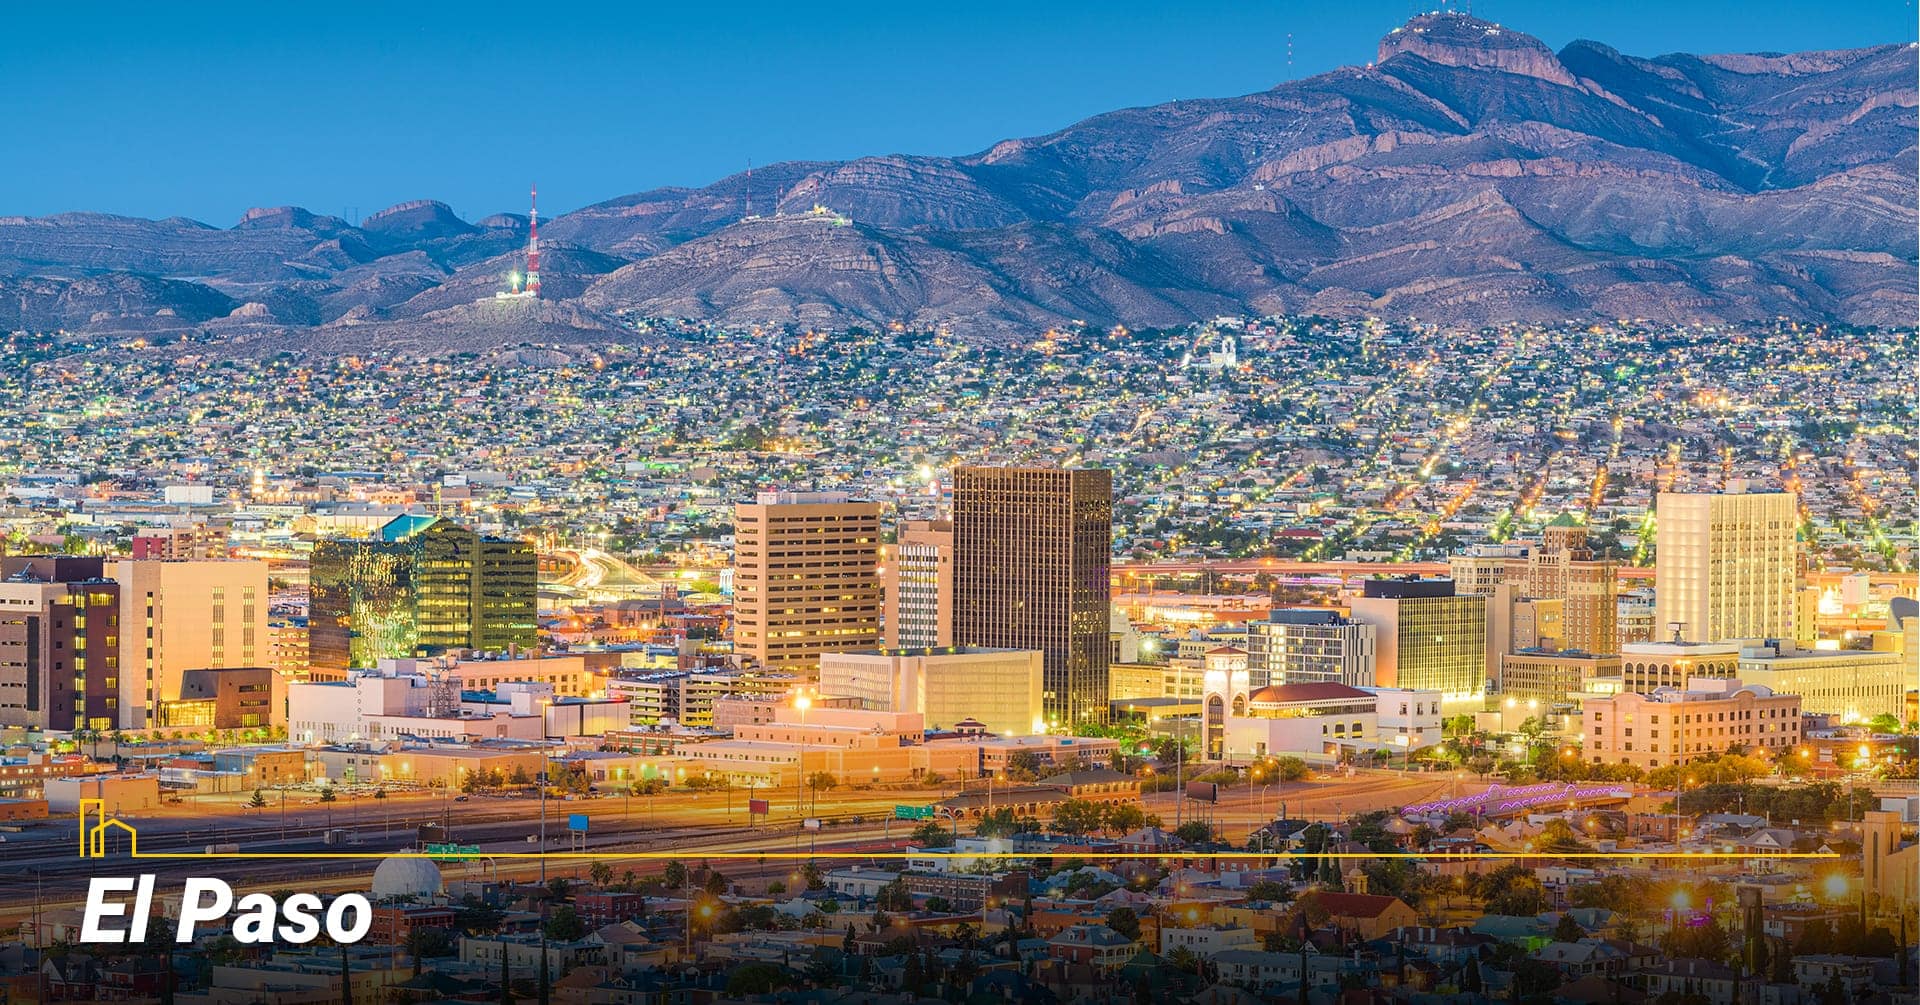 El Paso city, Texas